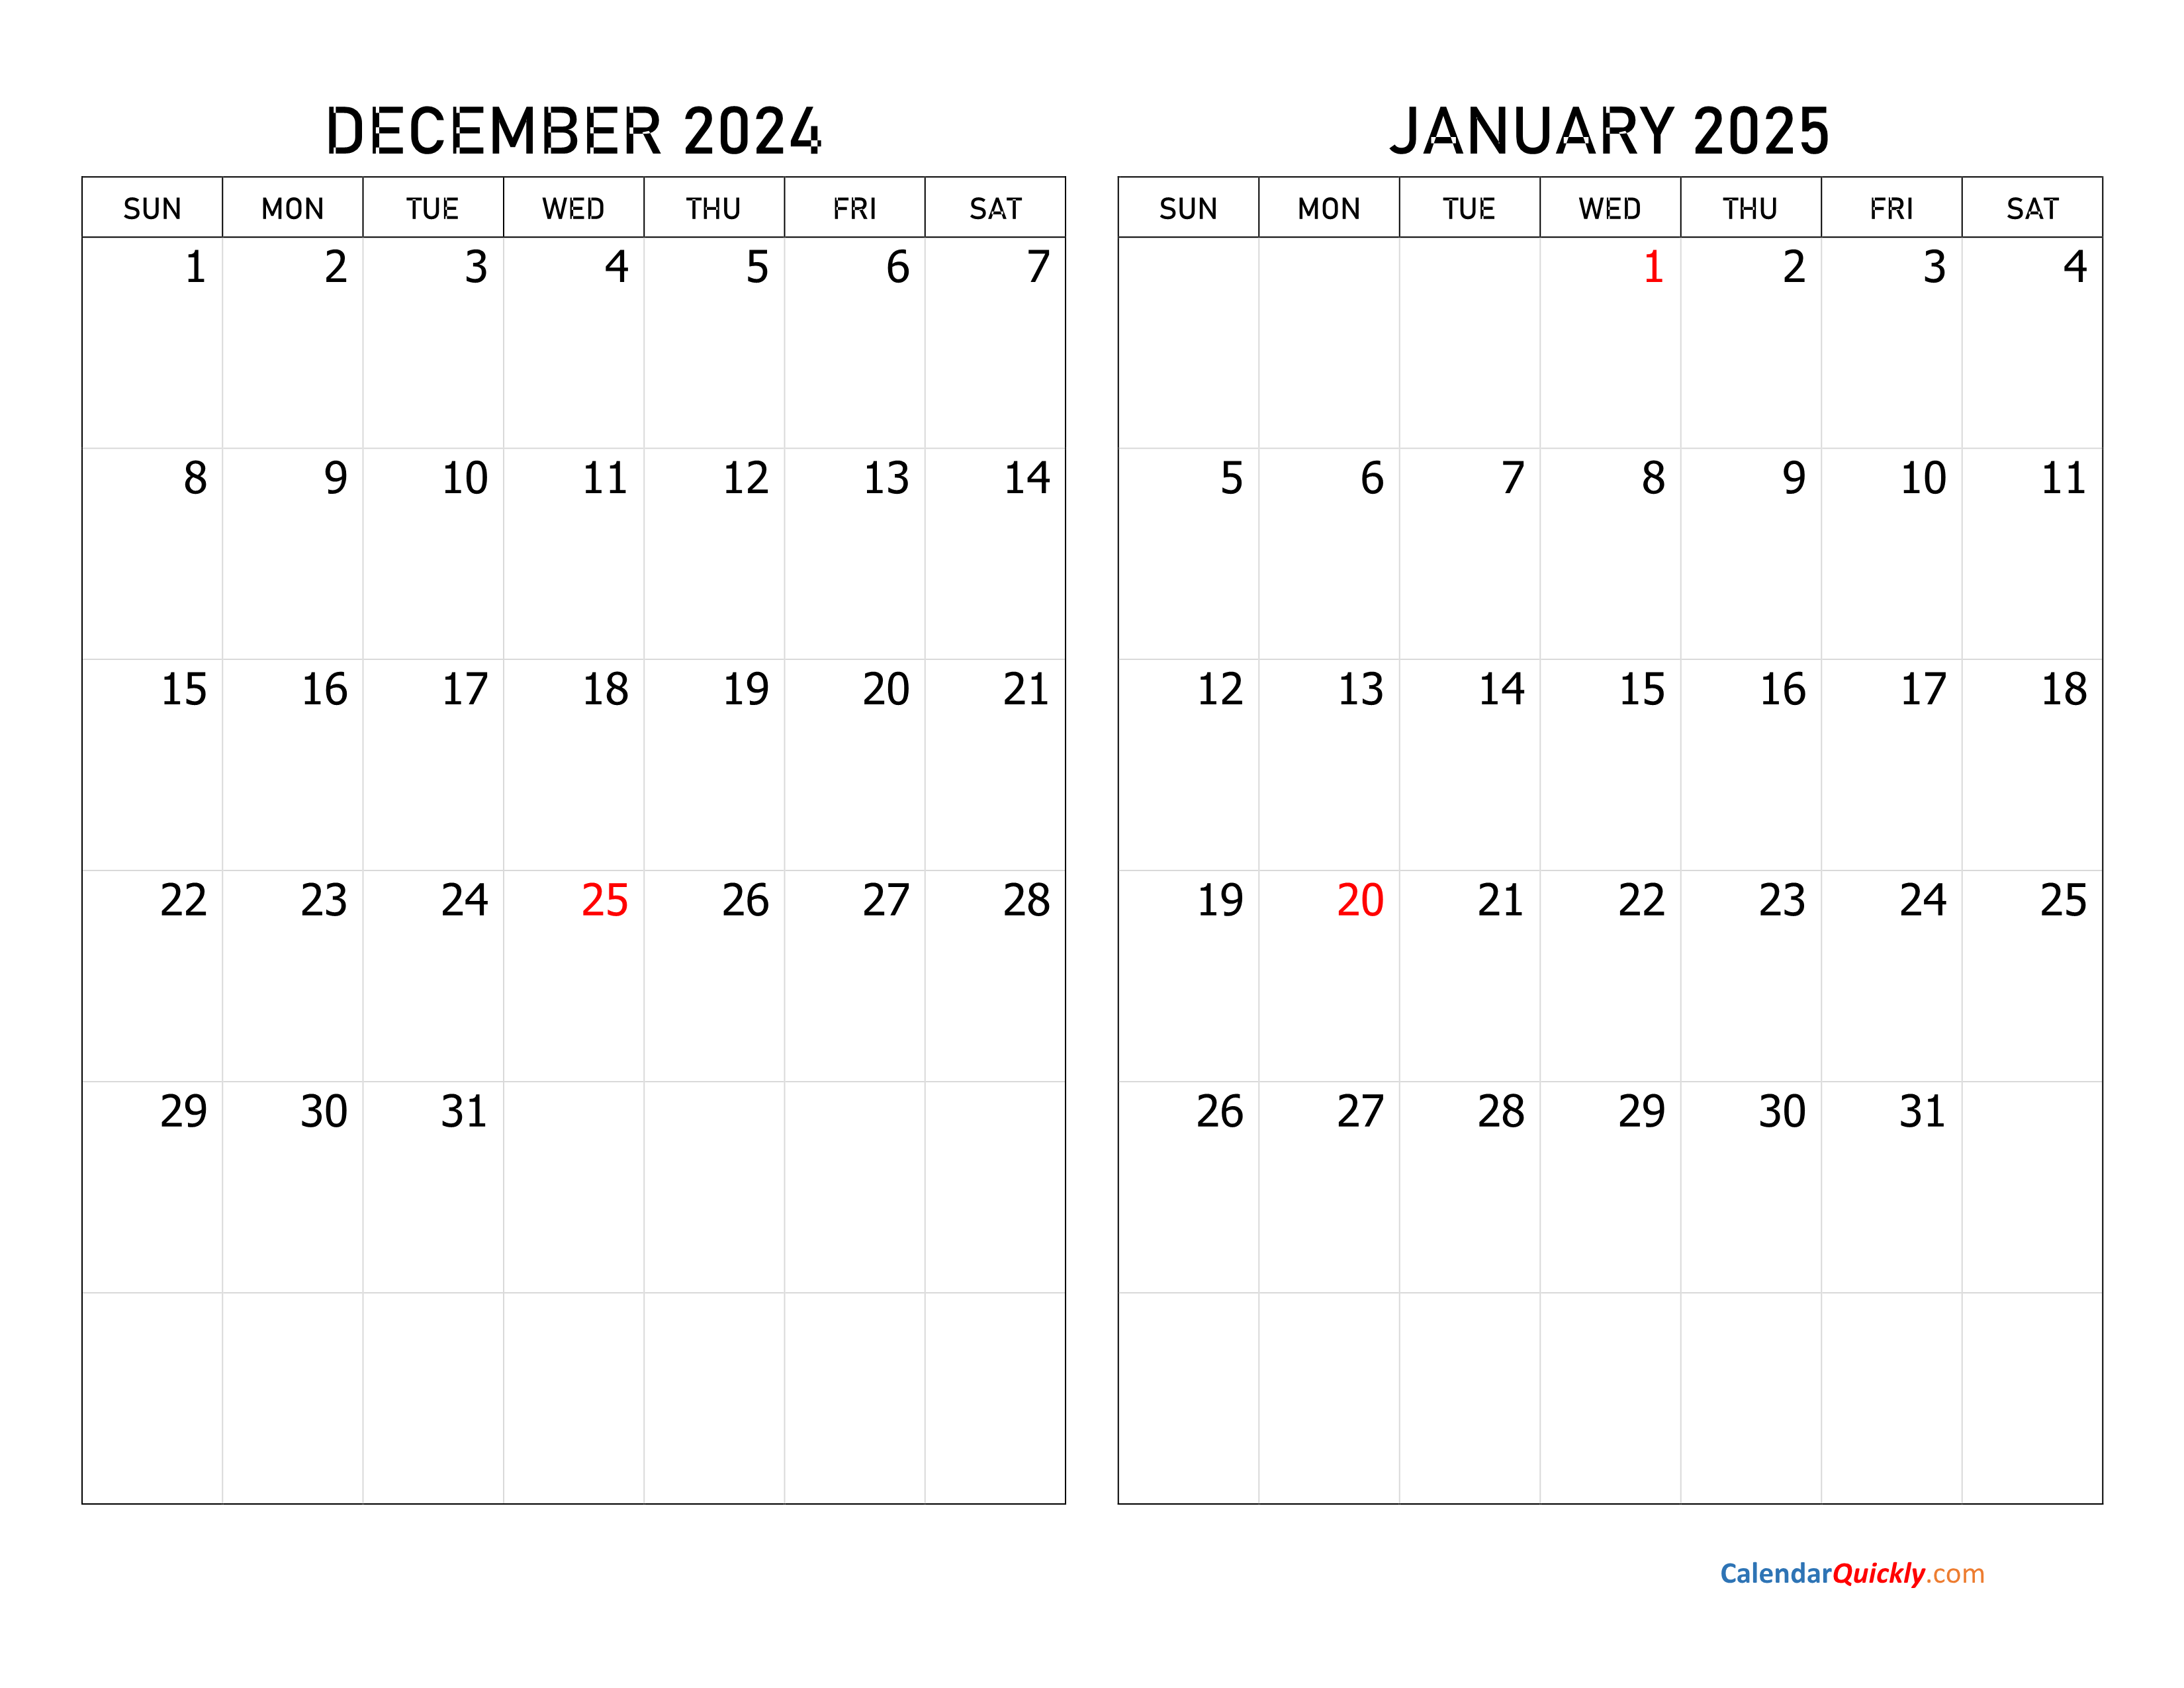 Calendar December 2025 January 2025 fay beatrisa